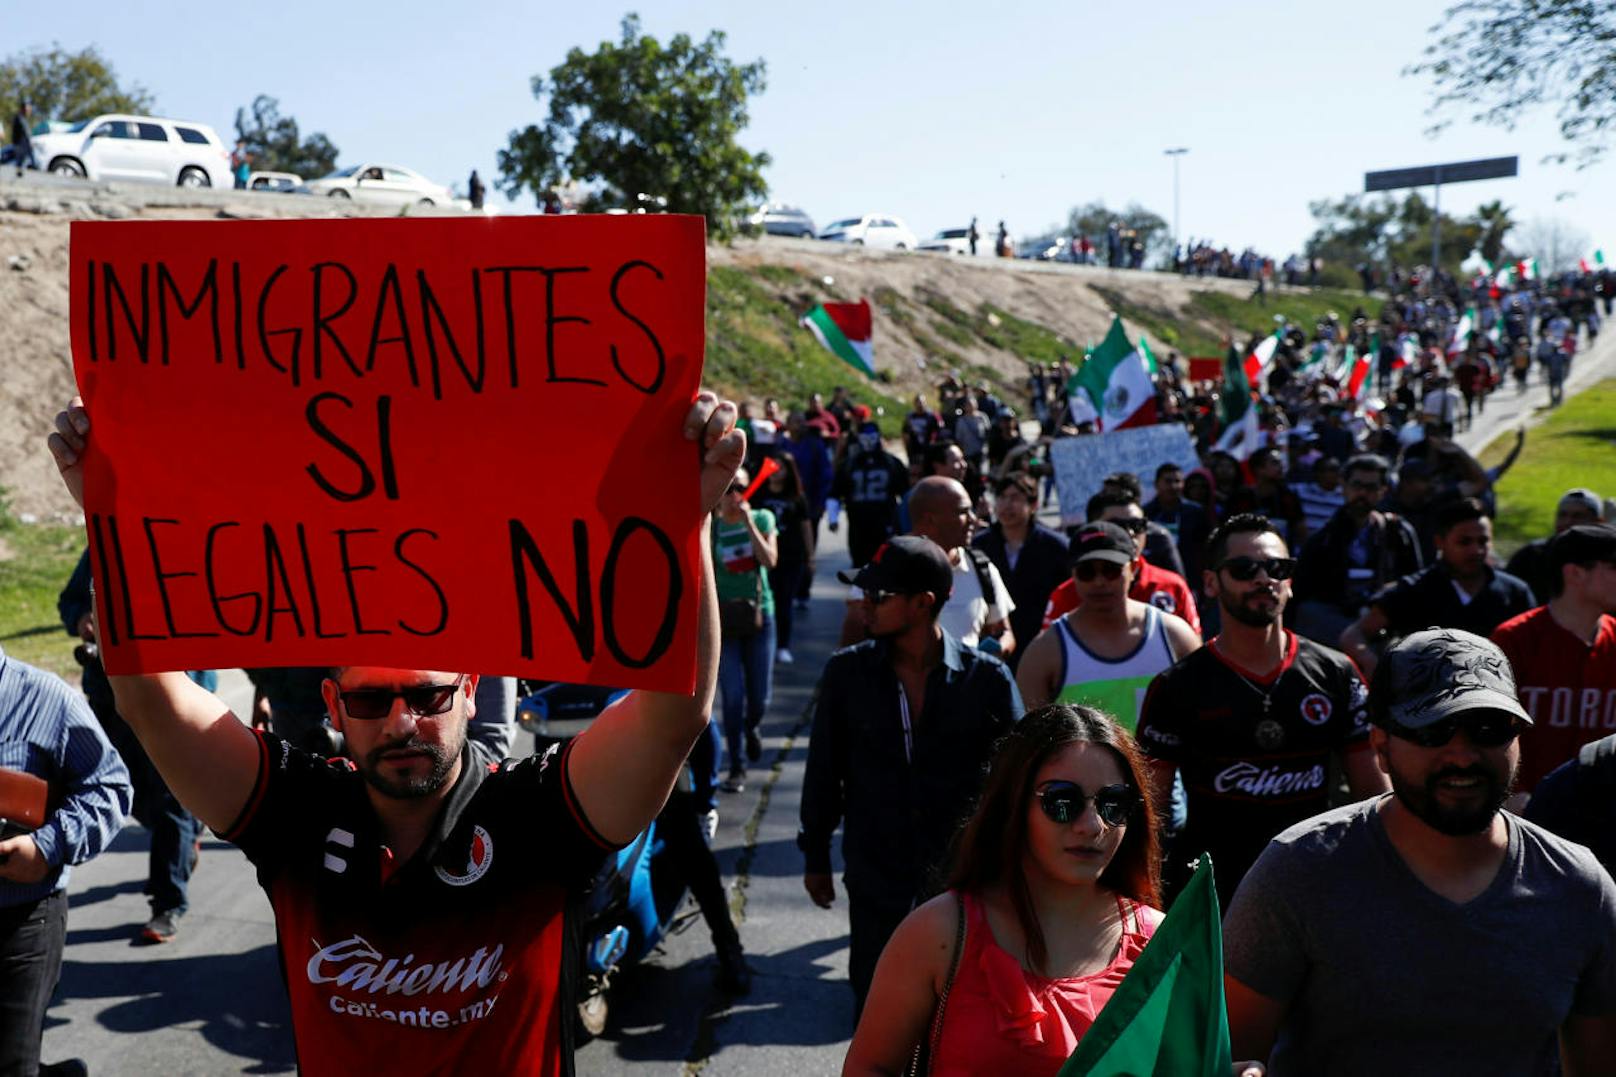 Ein Demonstrant hält ein Transparent hoch, auf dem steht: "Immigranten ja, Illegale nein"